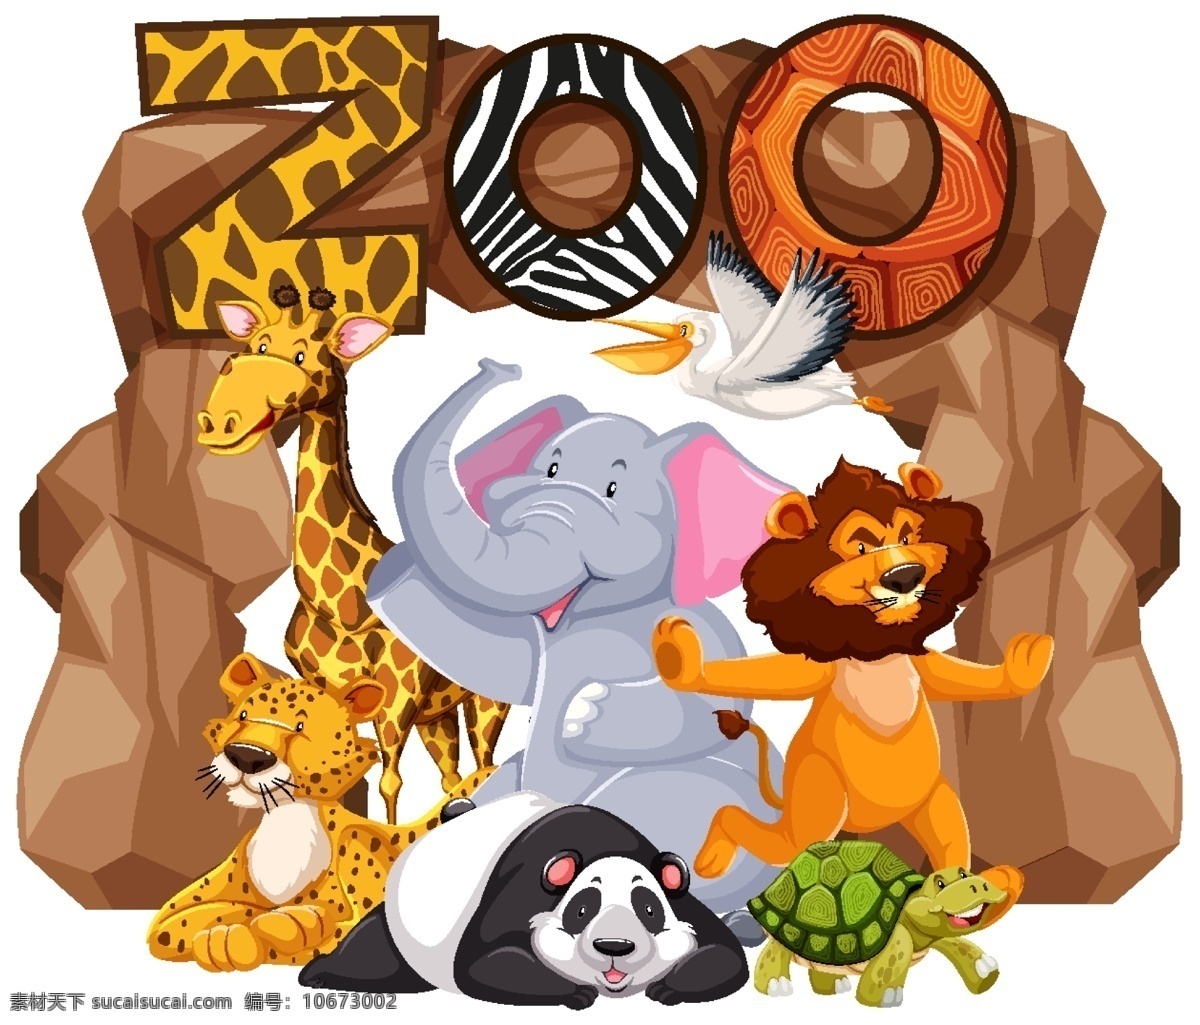 卡通 野生动物 卡通野生动物 动物背景 动物素材 动物园 可爱 动物 卡通动物生物 生物世界